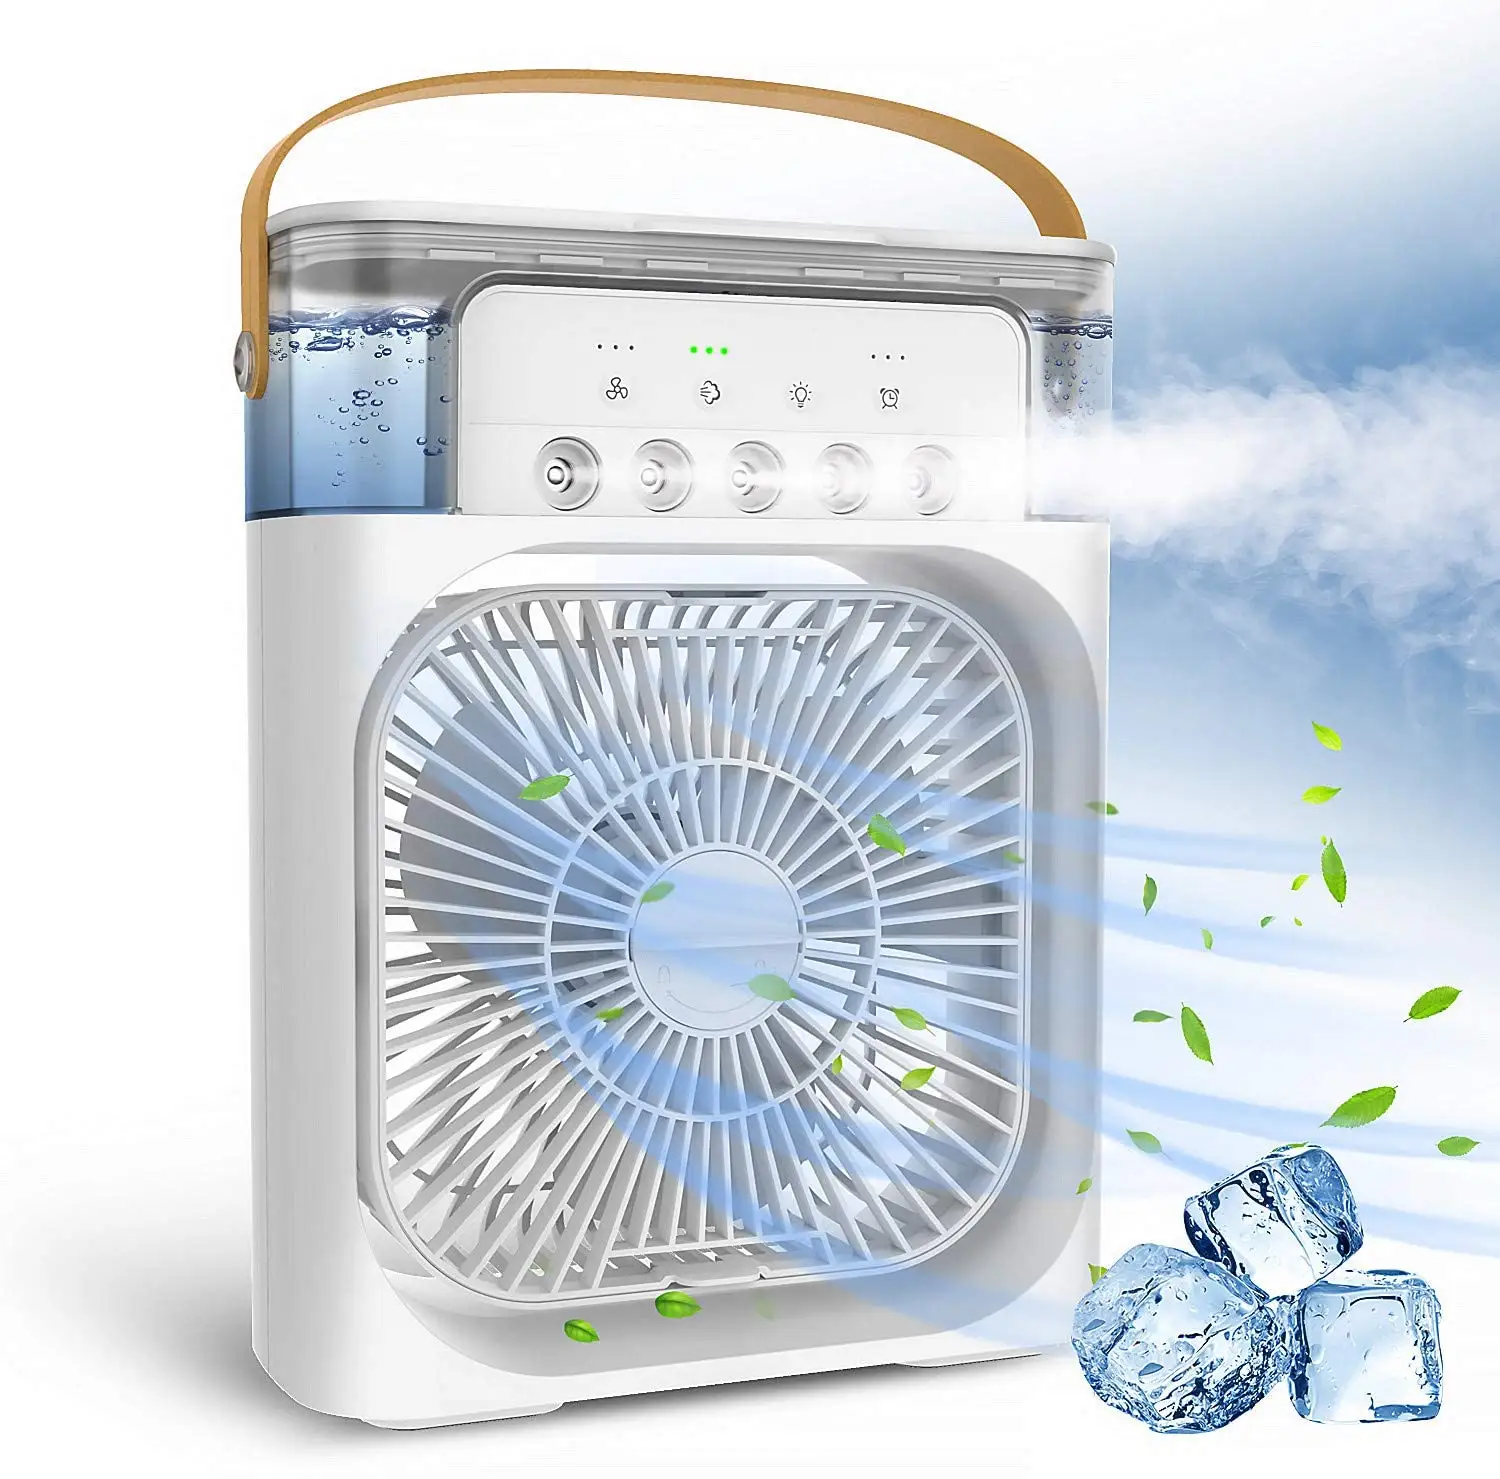 OEM verdampfer ventilator tropfenständer luft-/wasserkühler 5 v heimgebrauch dc mini luftbefeuchter luftkühler kühlung ventilator in